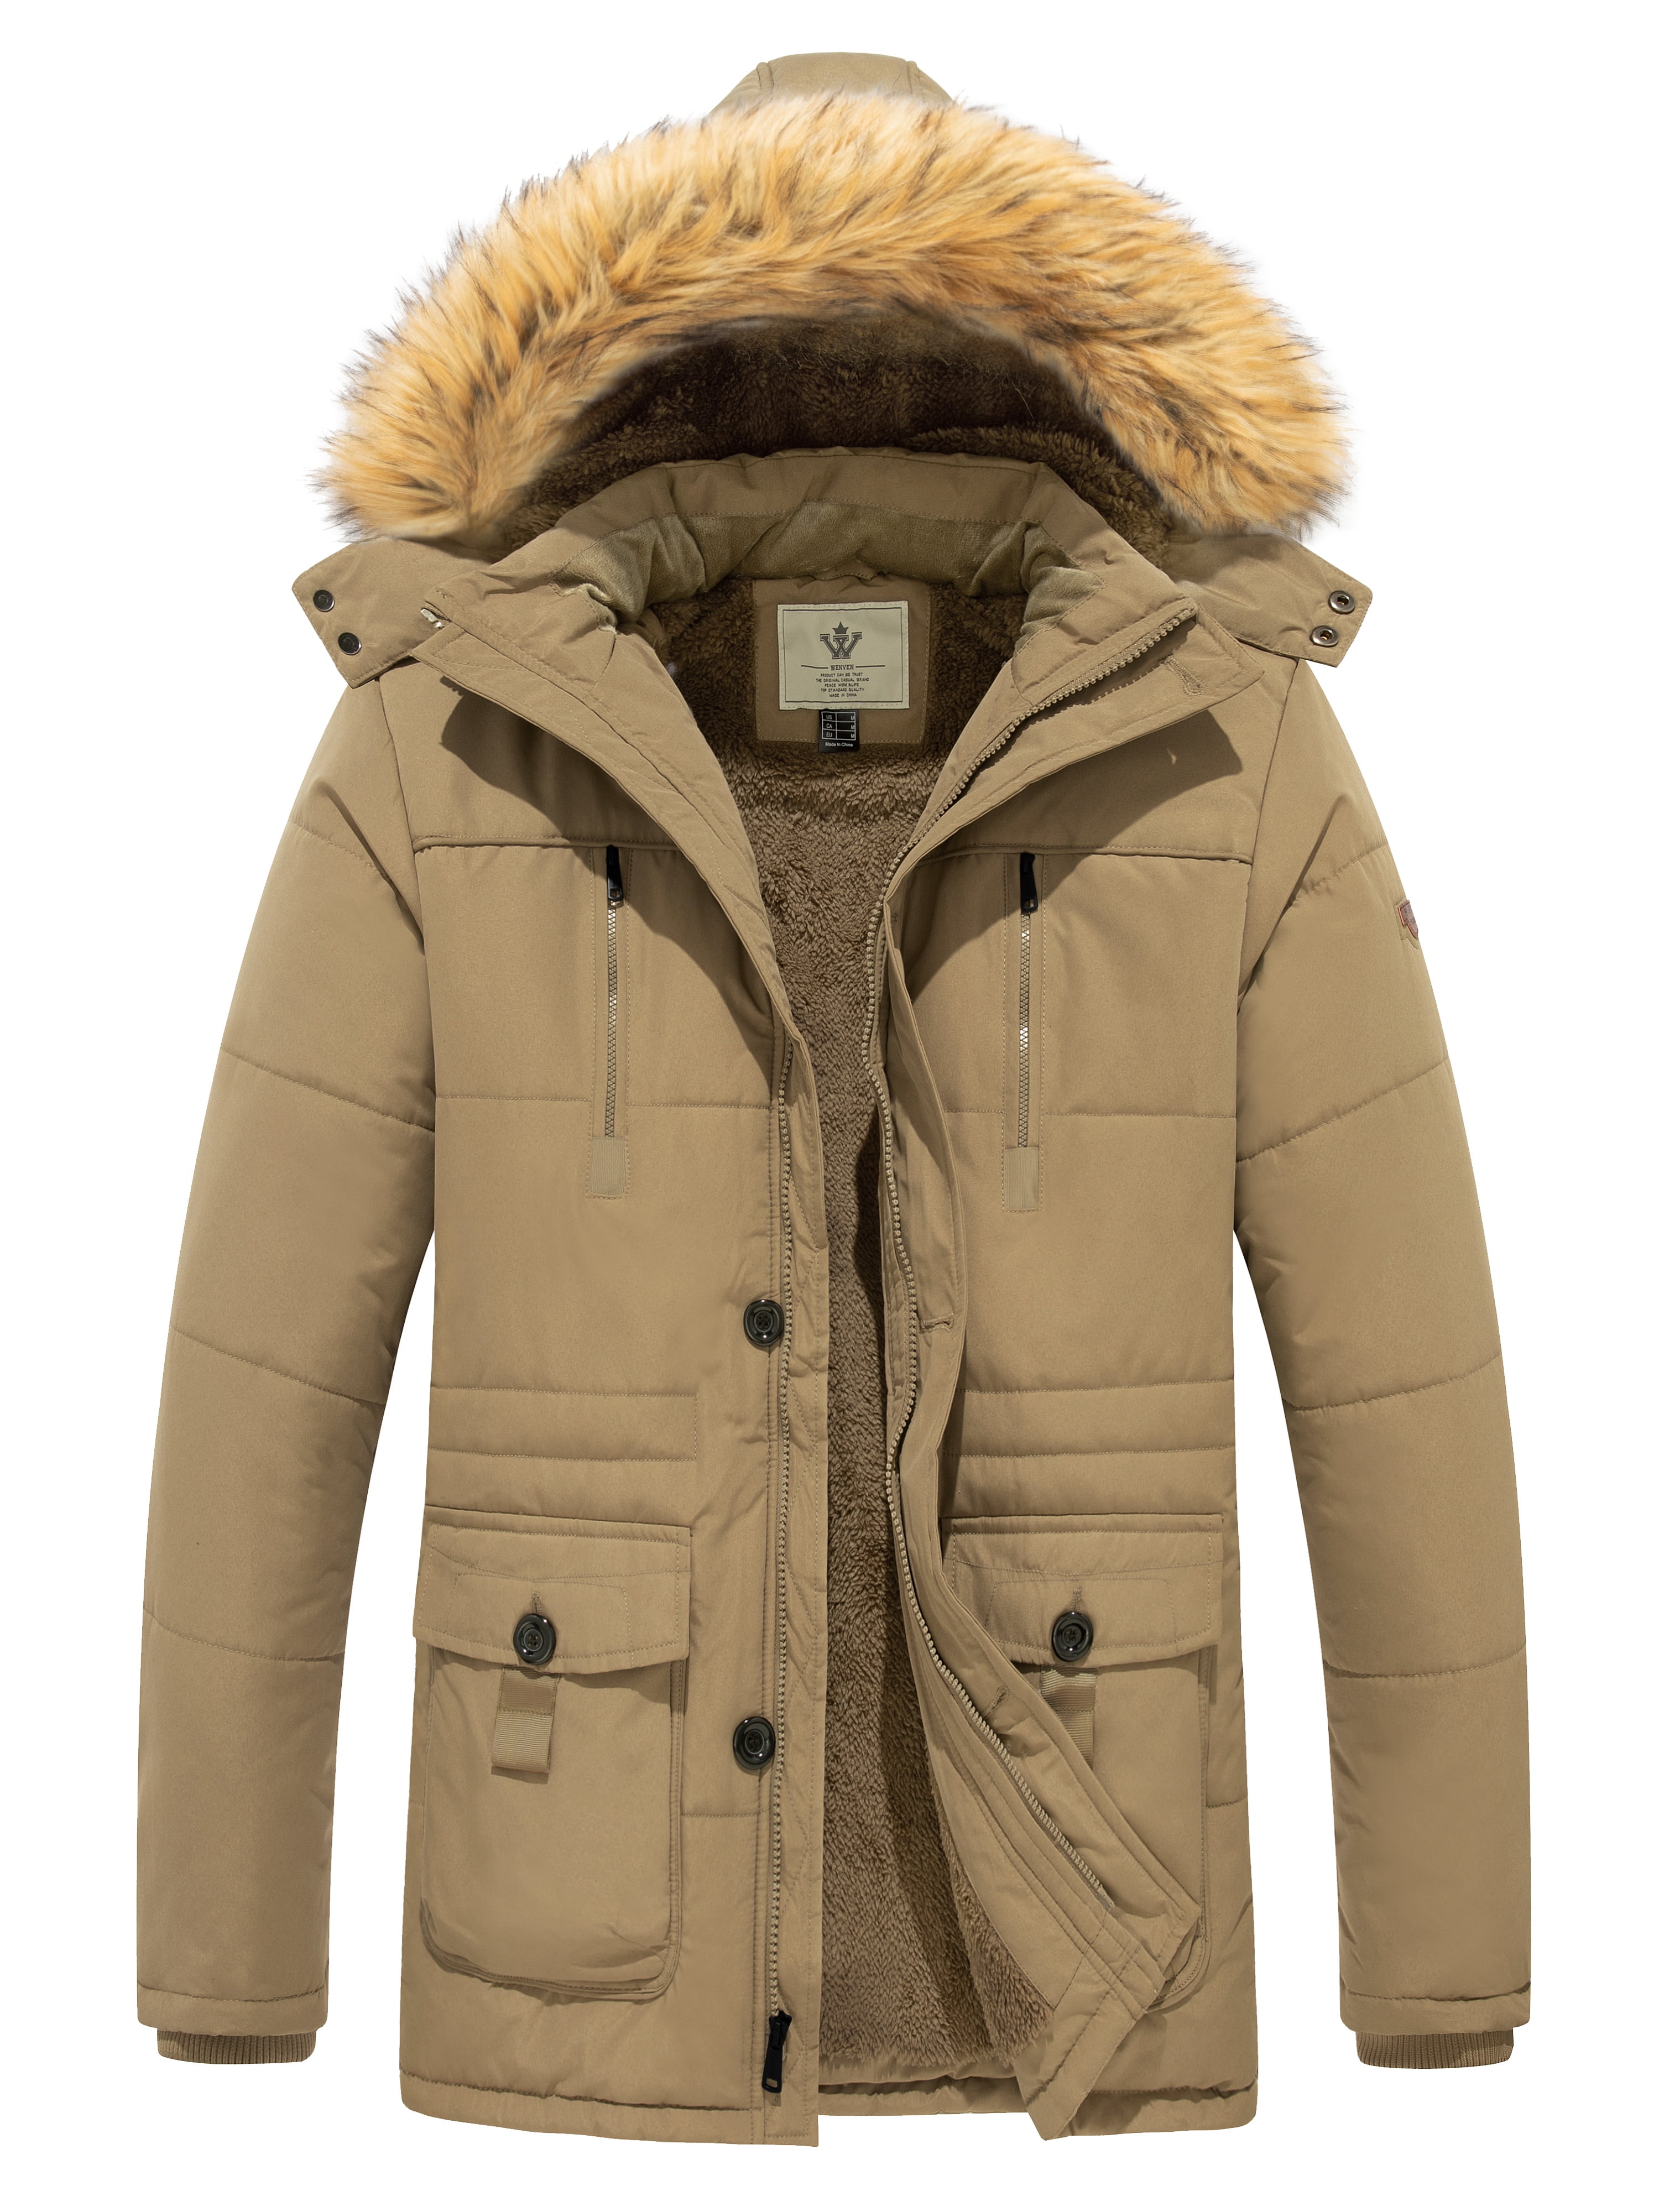 WenVen Men's Winter Coat Cotton Parka Coat Warm Hooded Waterproof ...